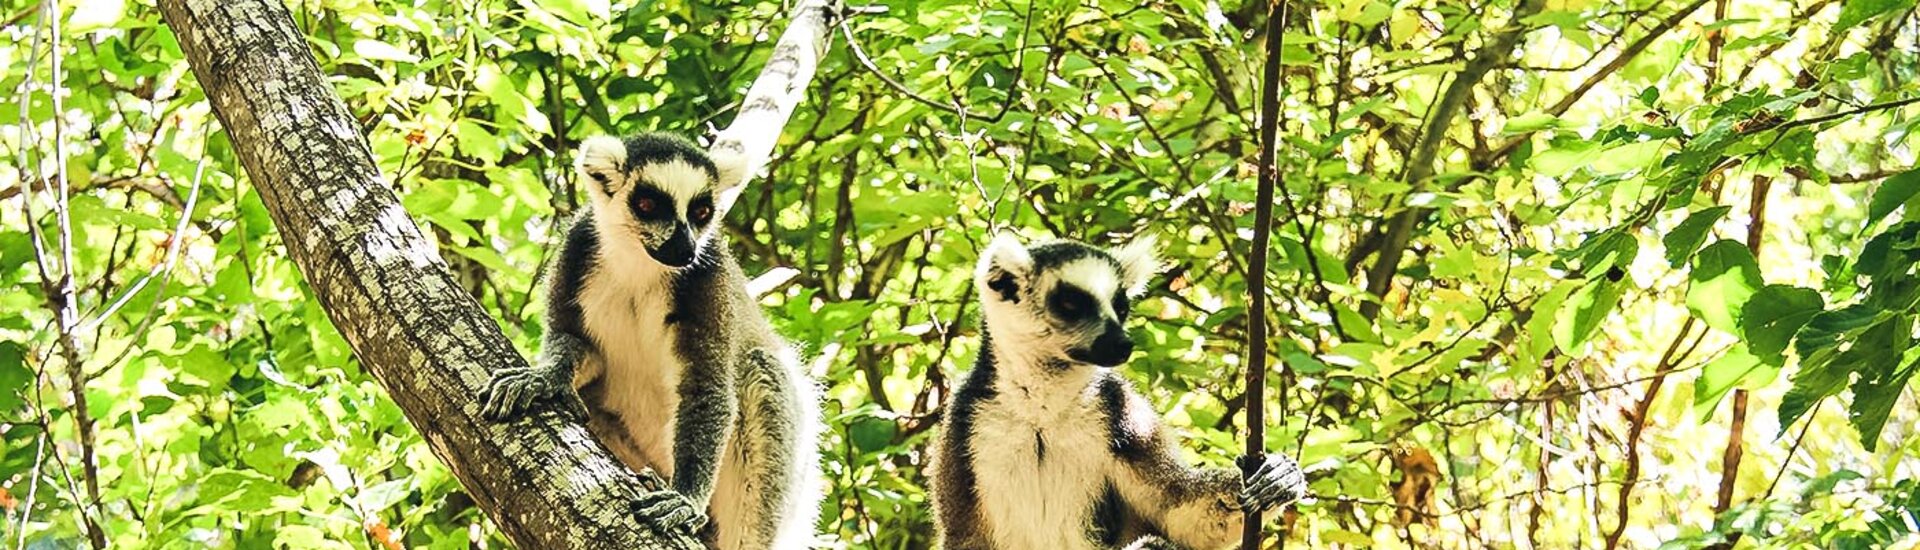 Lemuren im Baum des Isalo Nationalparks in Madagaskar